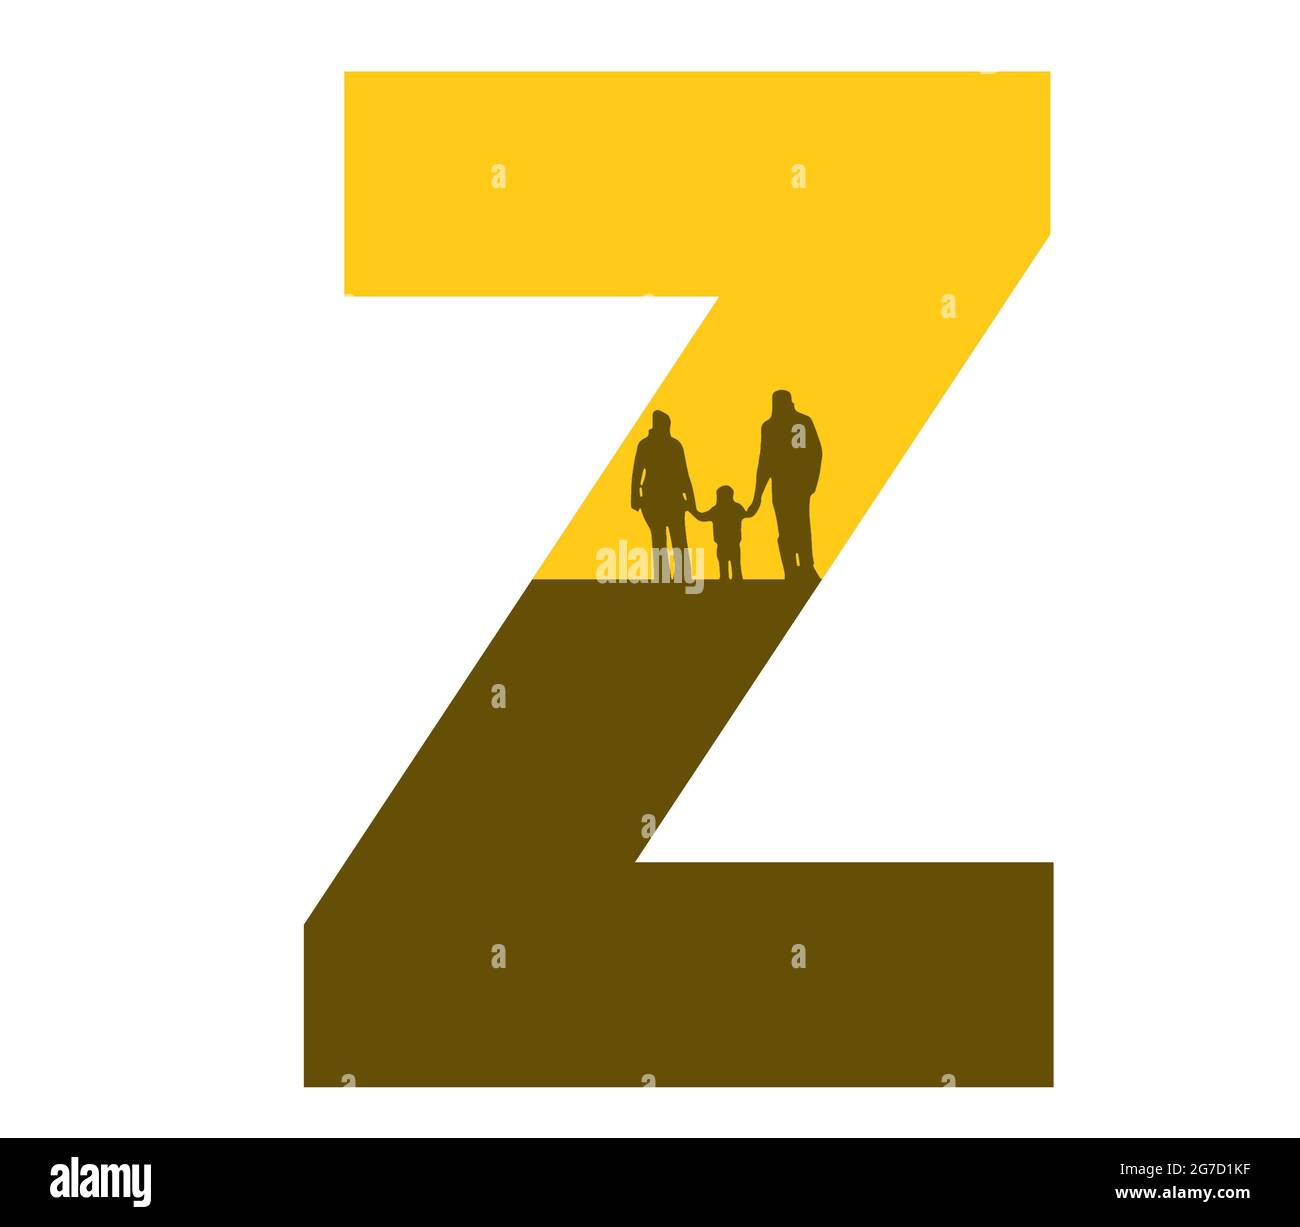 Lettre Z de l'alphabet avec une silhouette de famille, de père, de mère et d'enfant, de couleur ocre et marron Banque D'Images